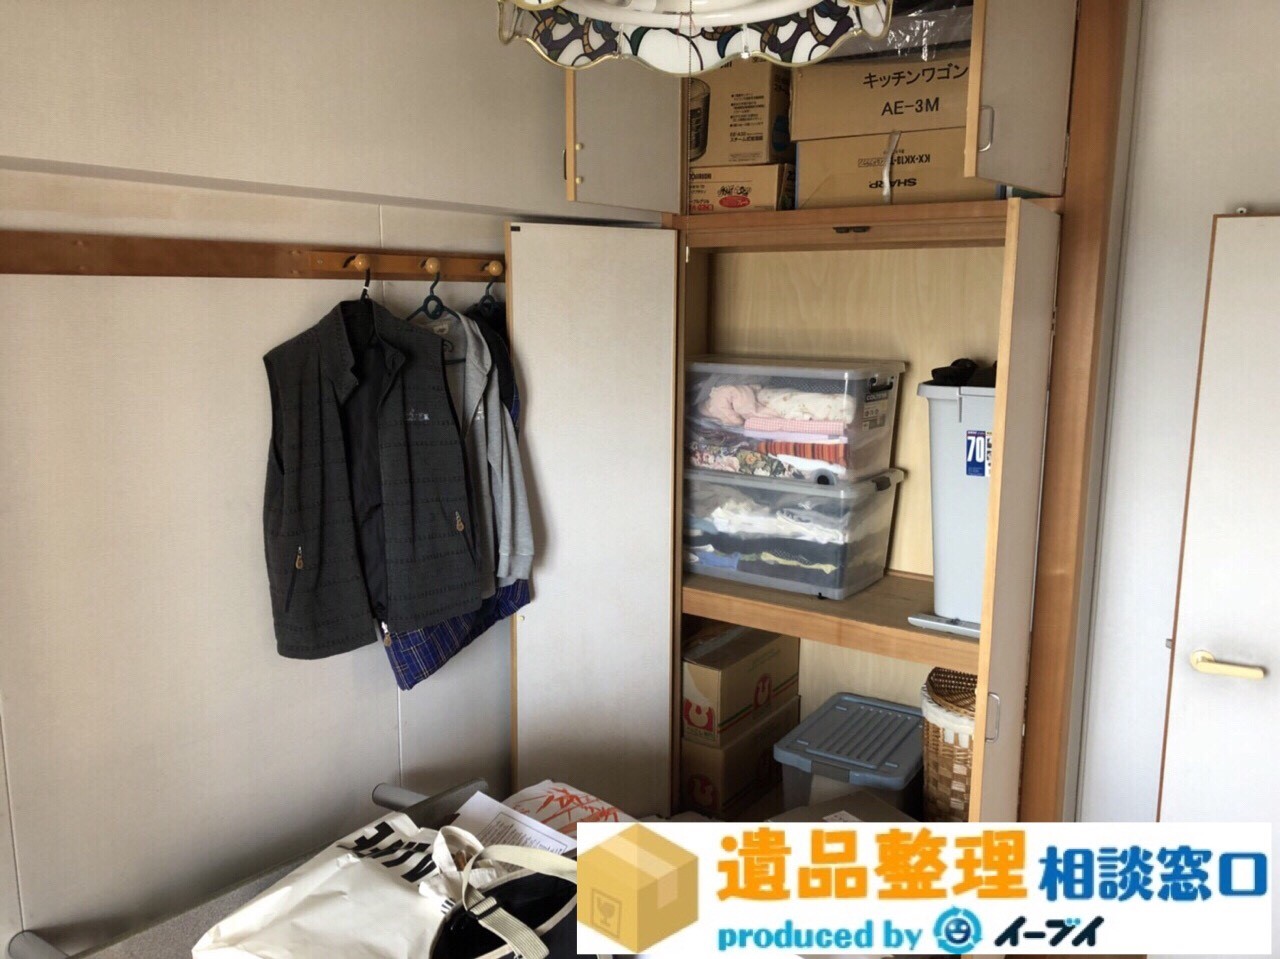 大阪府河内長野市で遺品整理作業に伴い押入れの荷物や衣類の片付け作業。のアイキャッチ